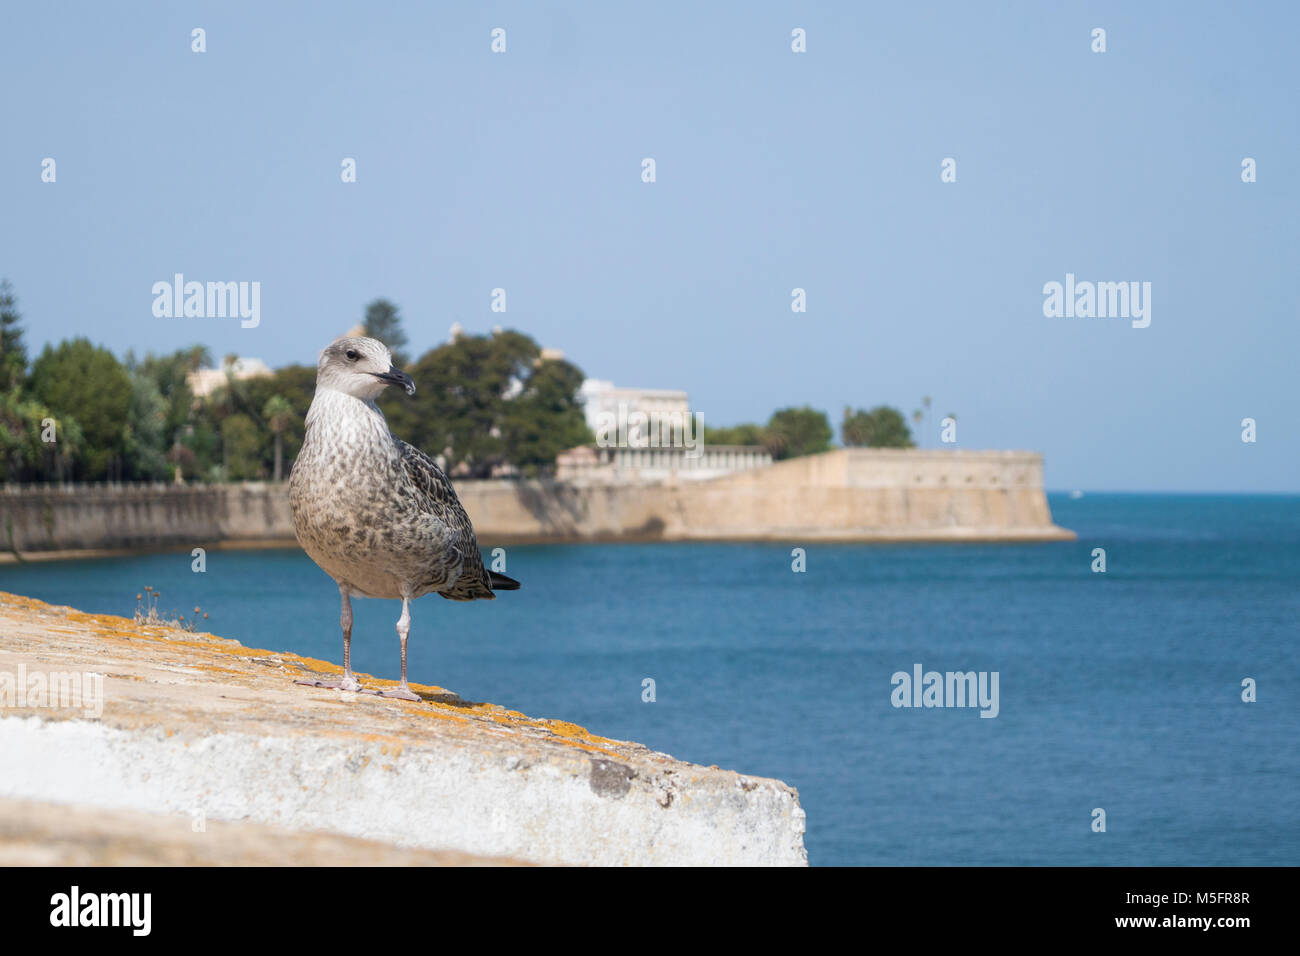 Youn Möwe in Cadiz (Spanien) - Vogel Fotografie Stockfoto